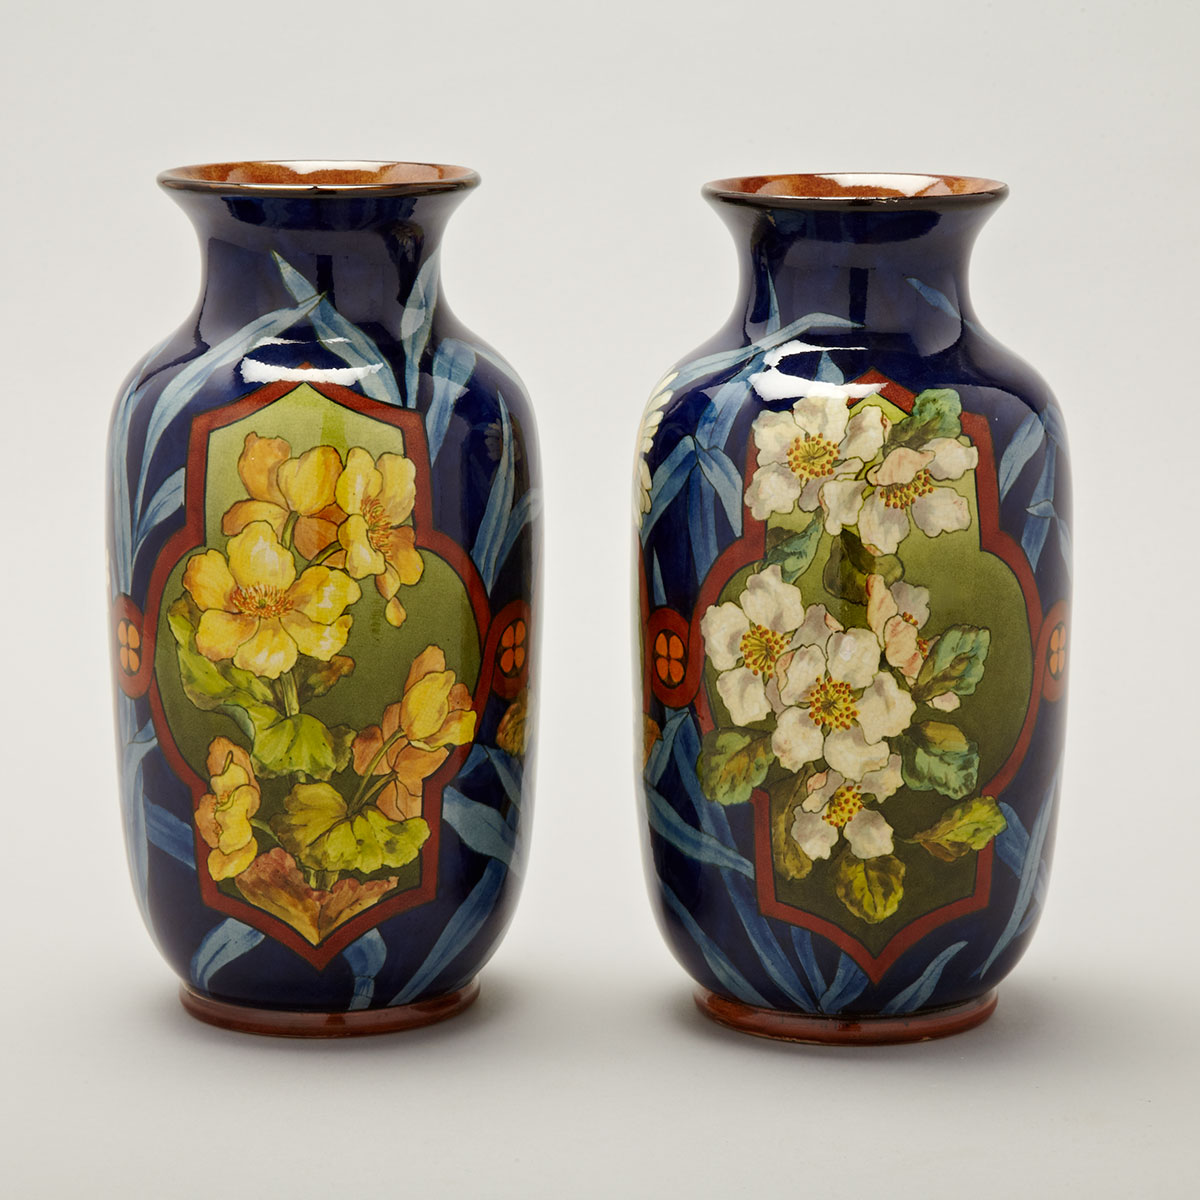 Pair of Doulton Faience Vases, Euphemia Thatcher, 1881